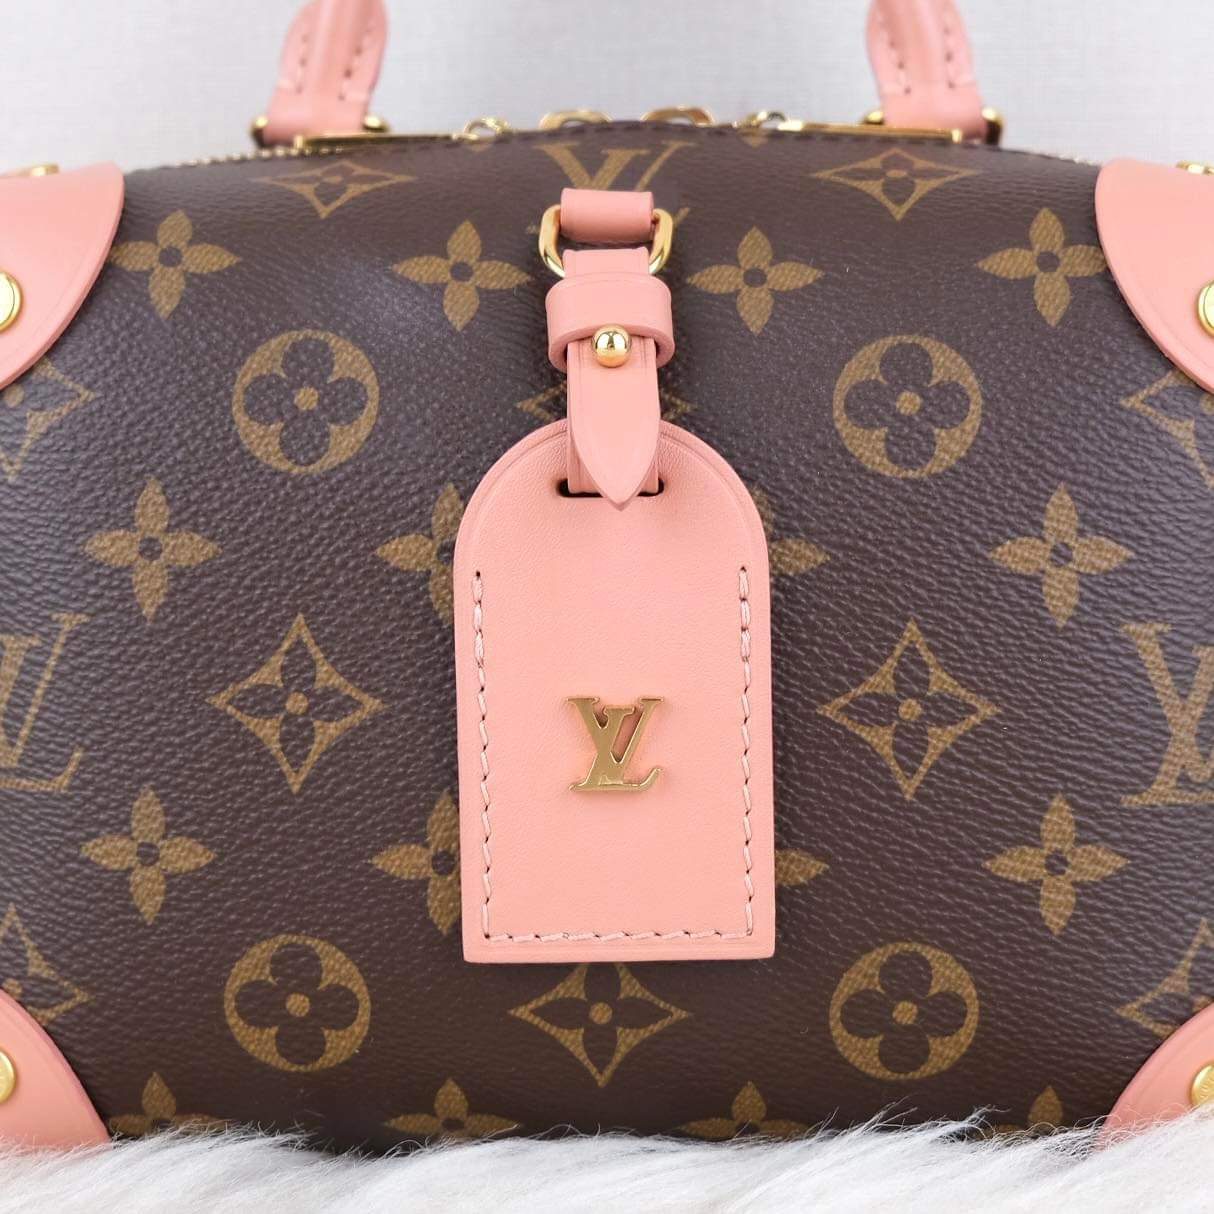 Louis Vuitton Monogram Petite Malle Souple Bag